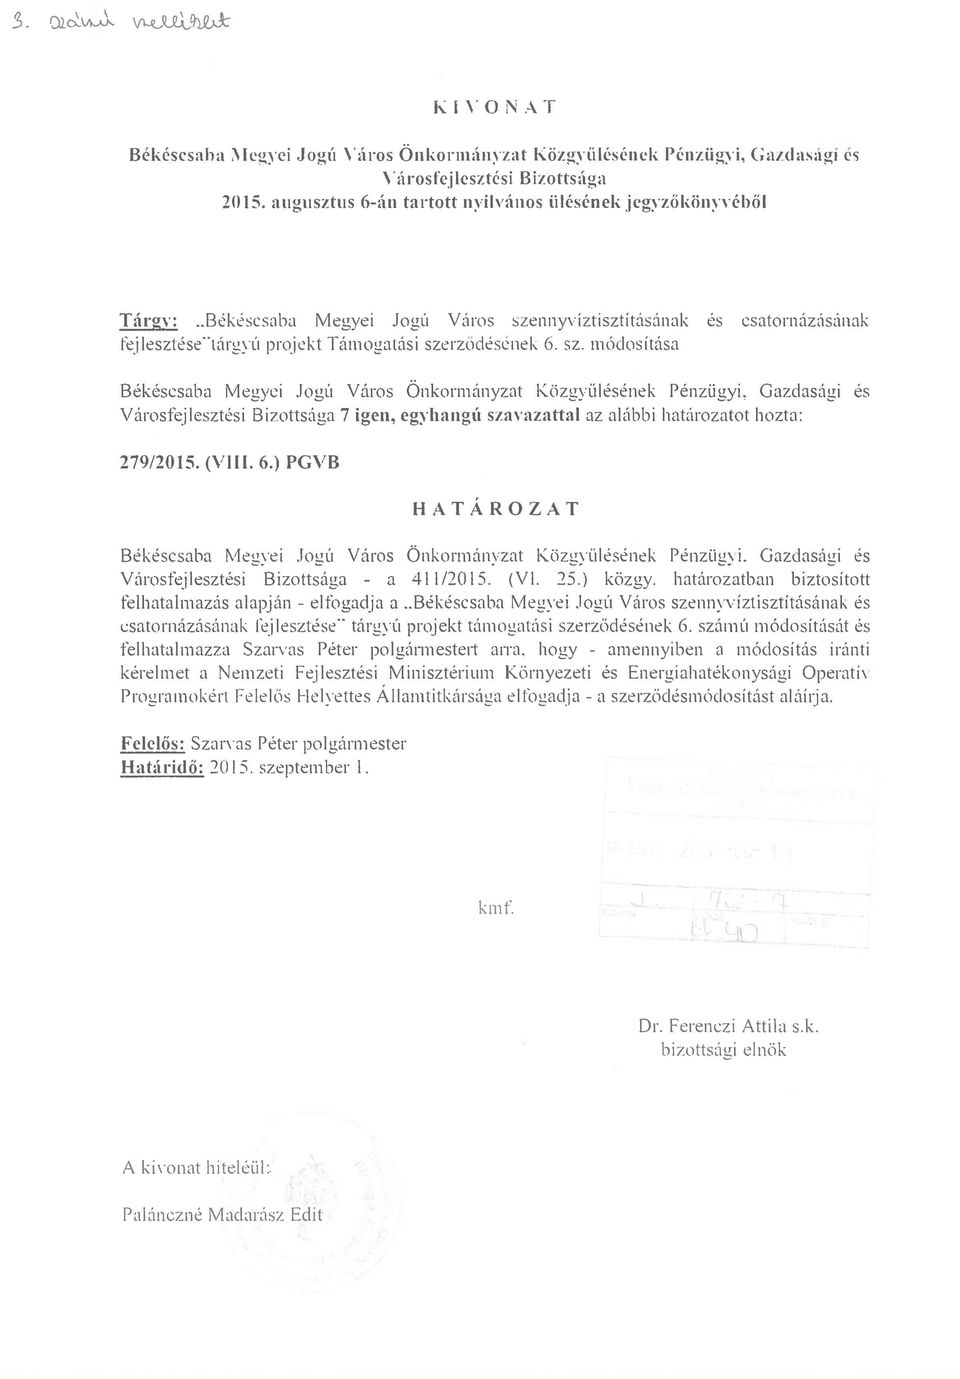 Jogú Város Önkormányzat Közgyülésének Pénzügyi, Gazdasági és Városfejlesztési Bizottsága 7 igen, egyhangú Slavazattal az alúbbi határozatot hozta: 279/2015. (VIII. 6.